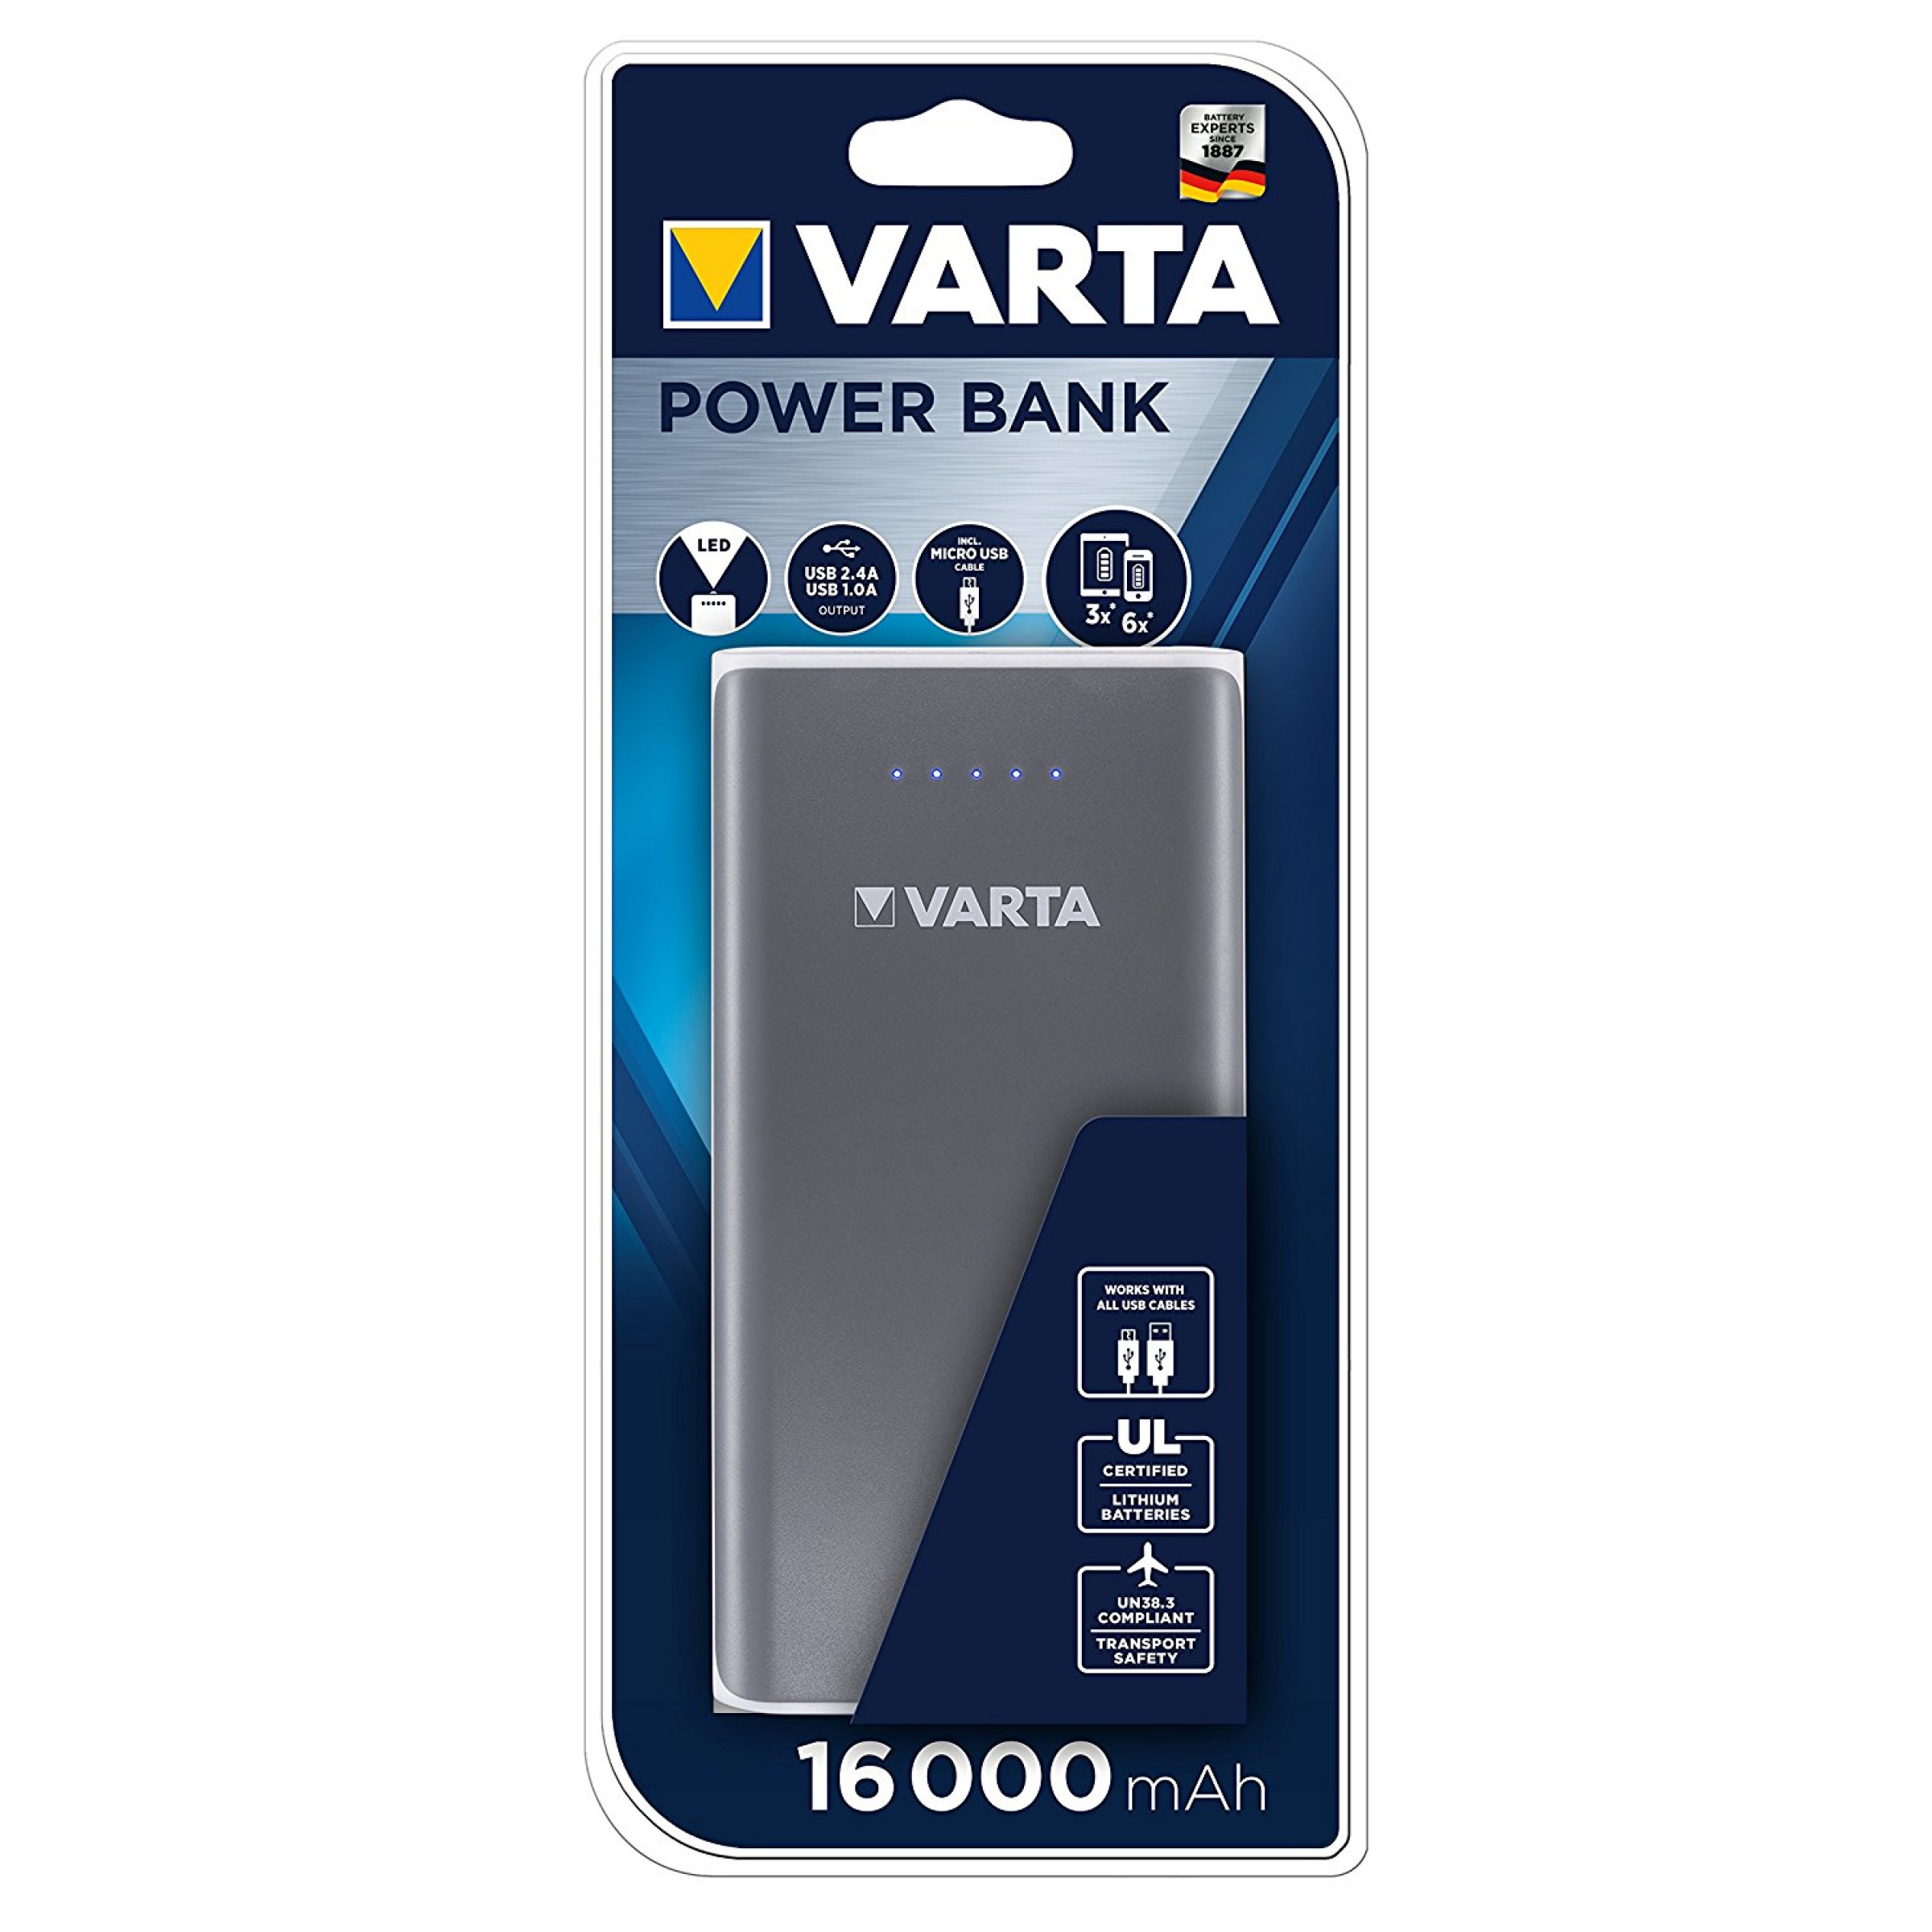 Varta Powerbank 16000